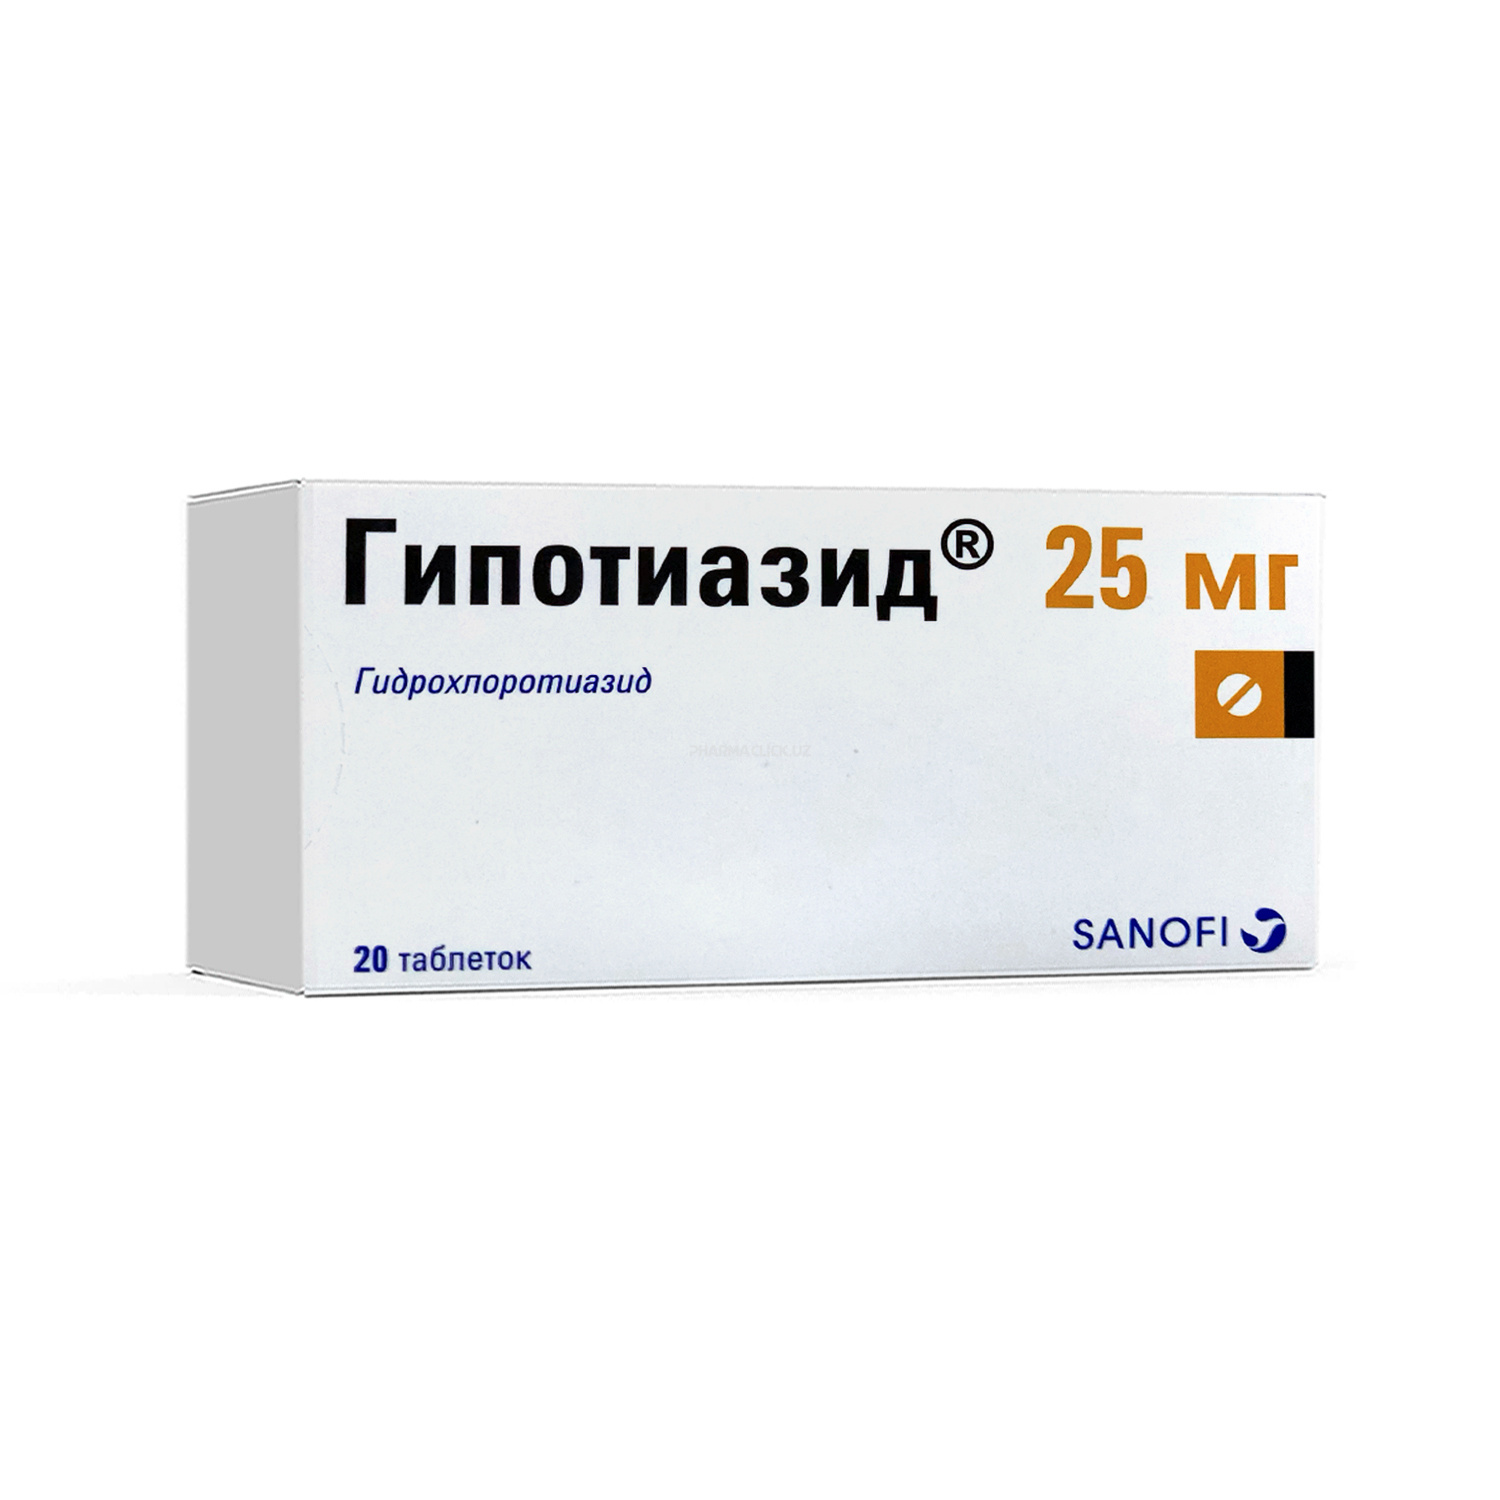 Gipotiazid tab 25 mg №20